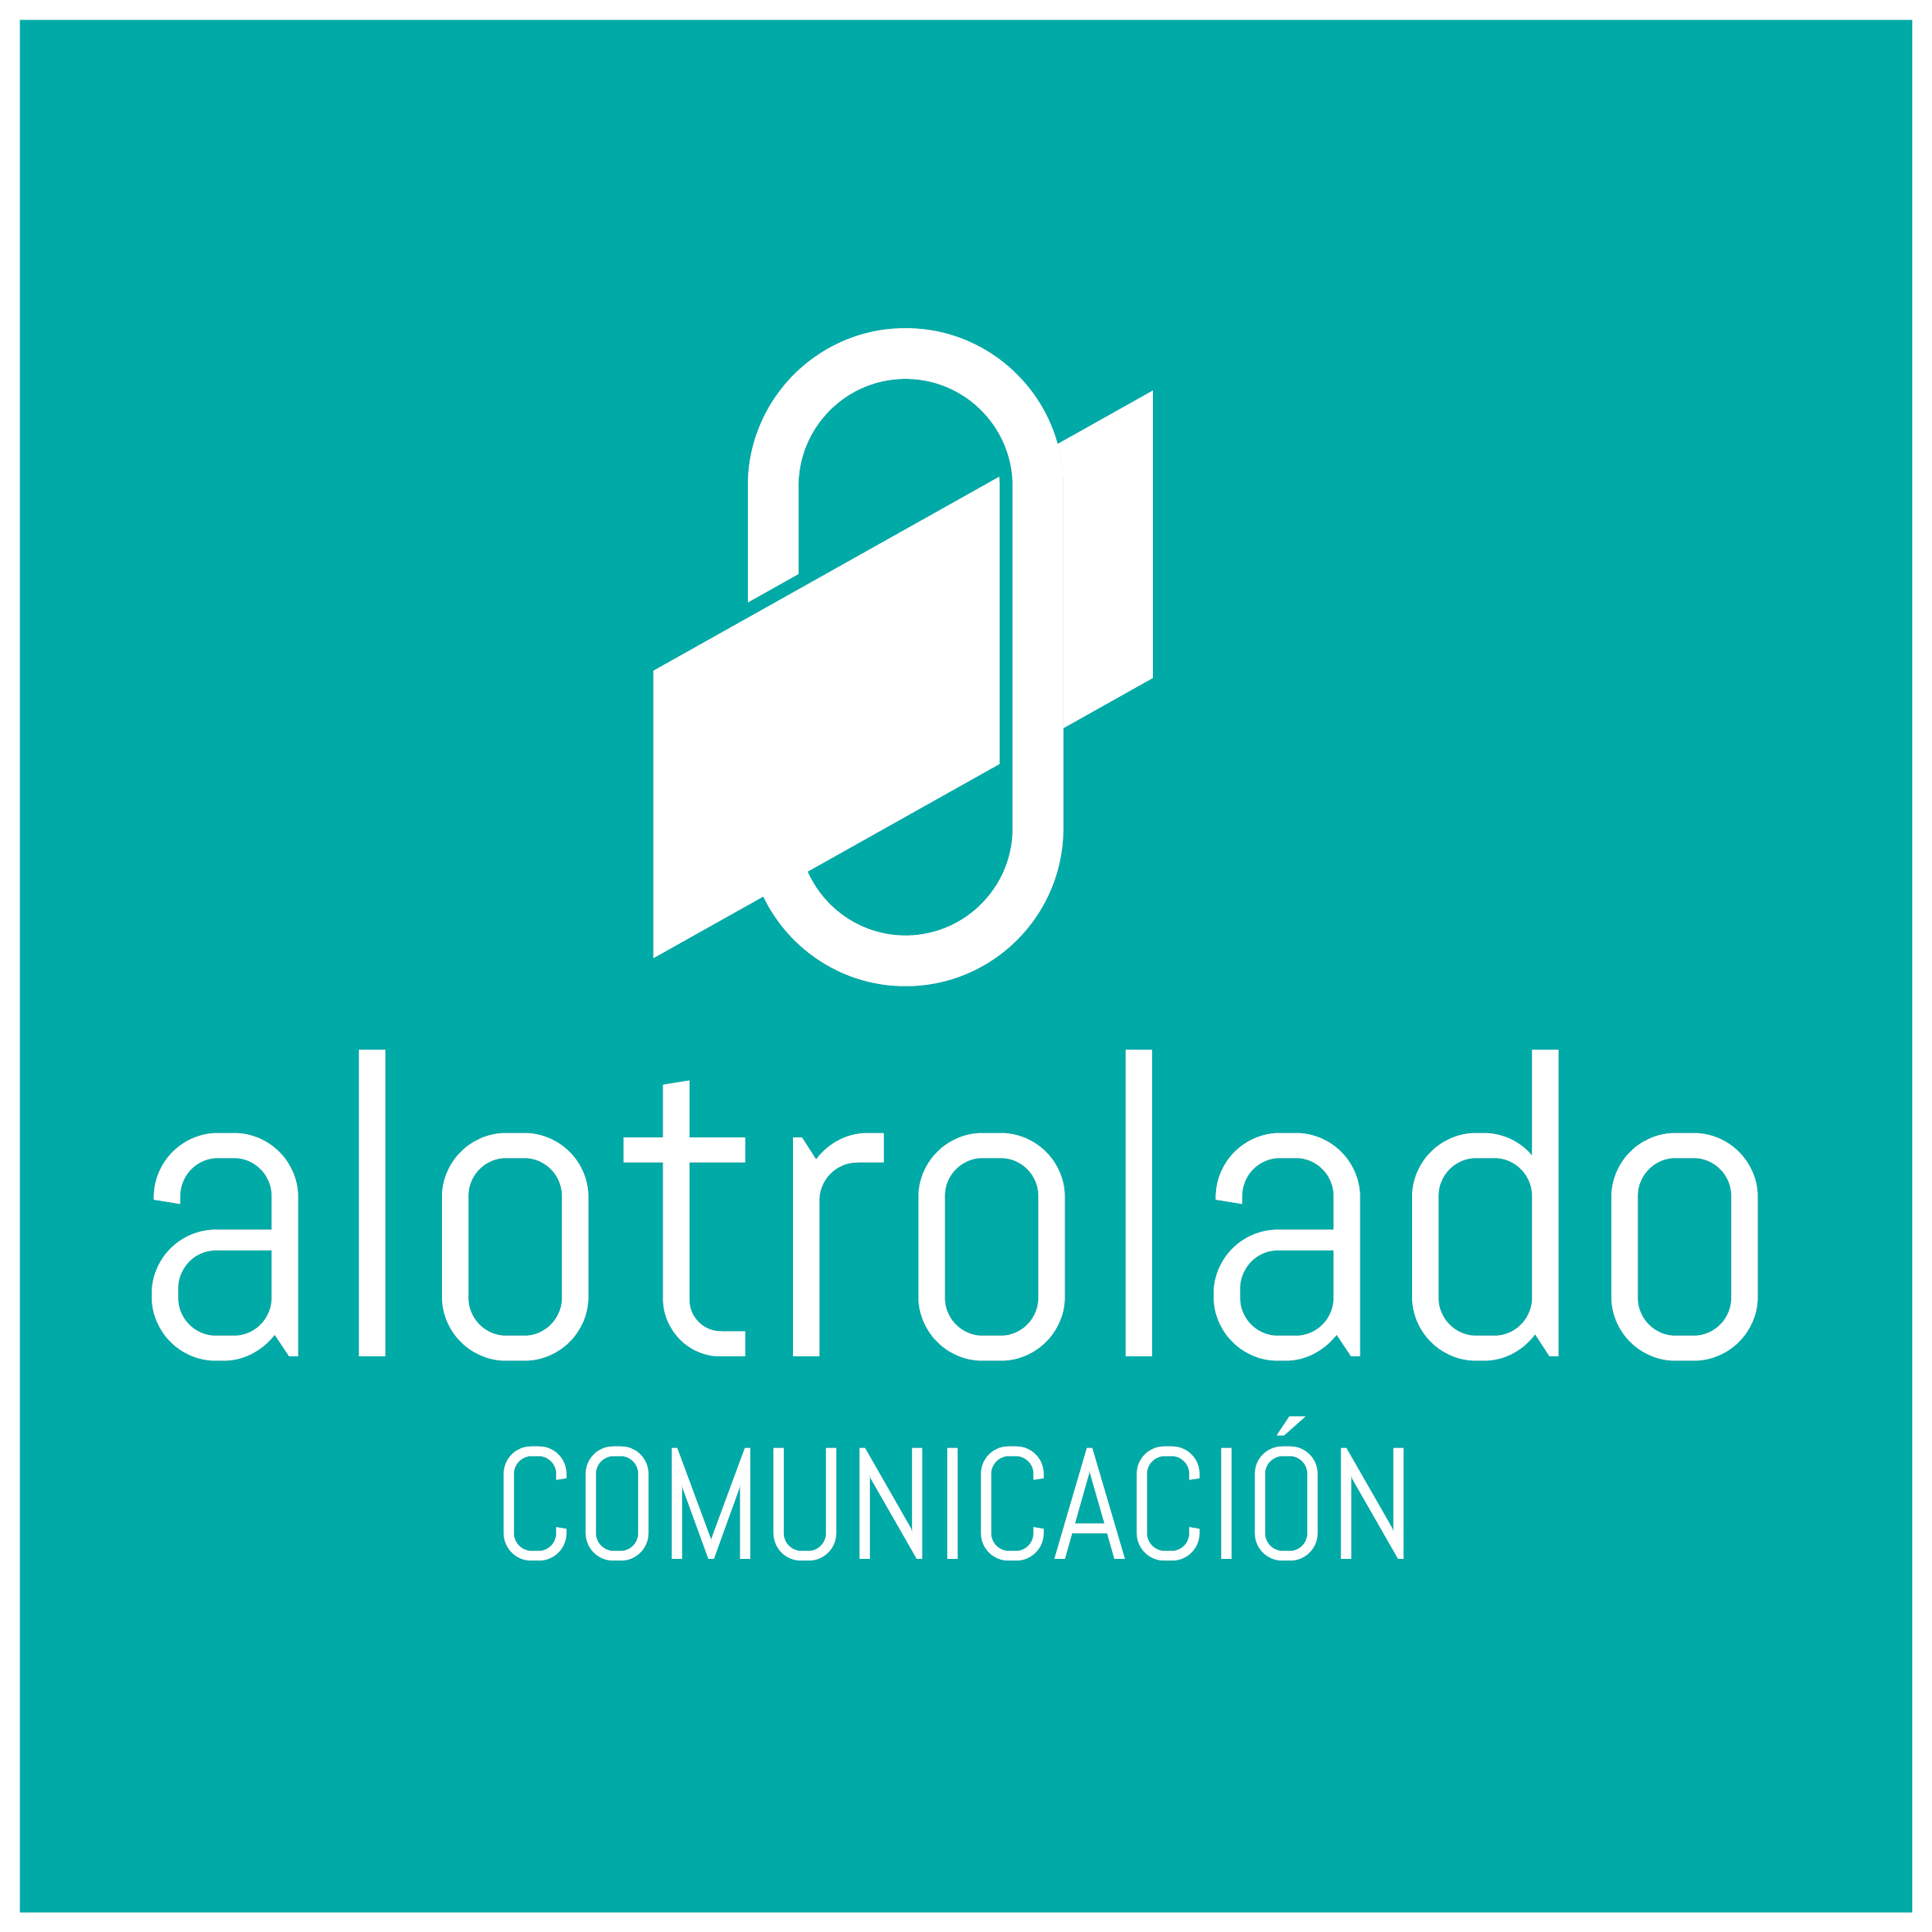 Alotrolado Comunicación, Agencia de marketing, comunicación y publicidad